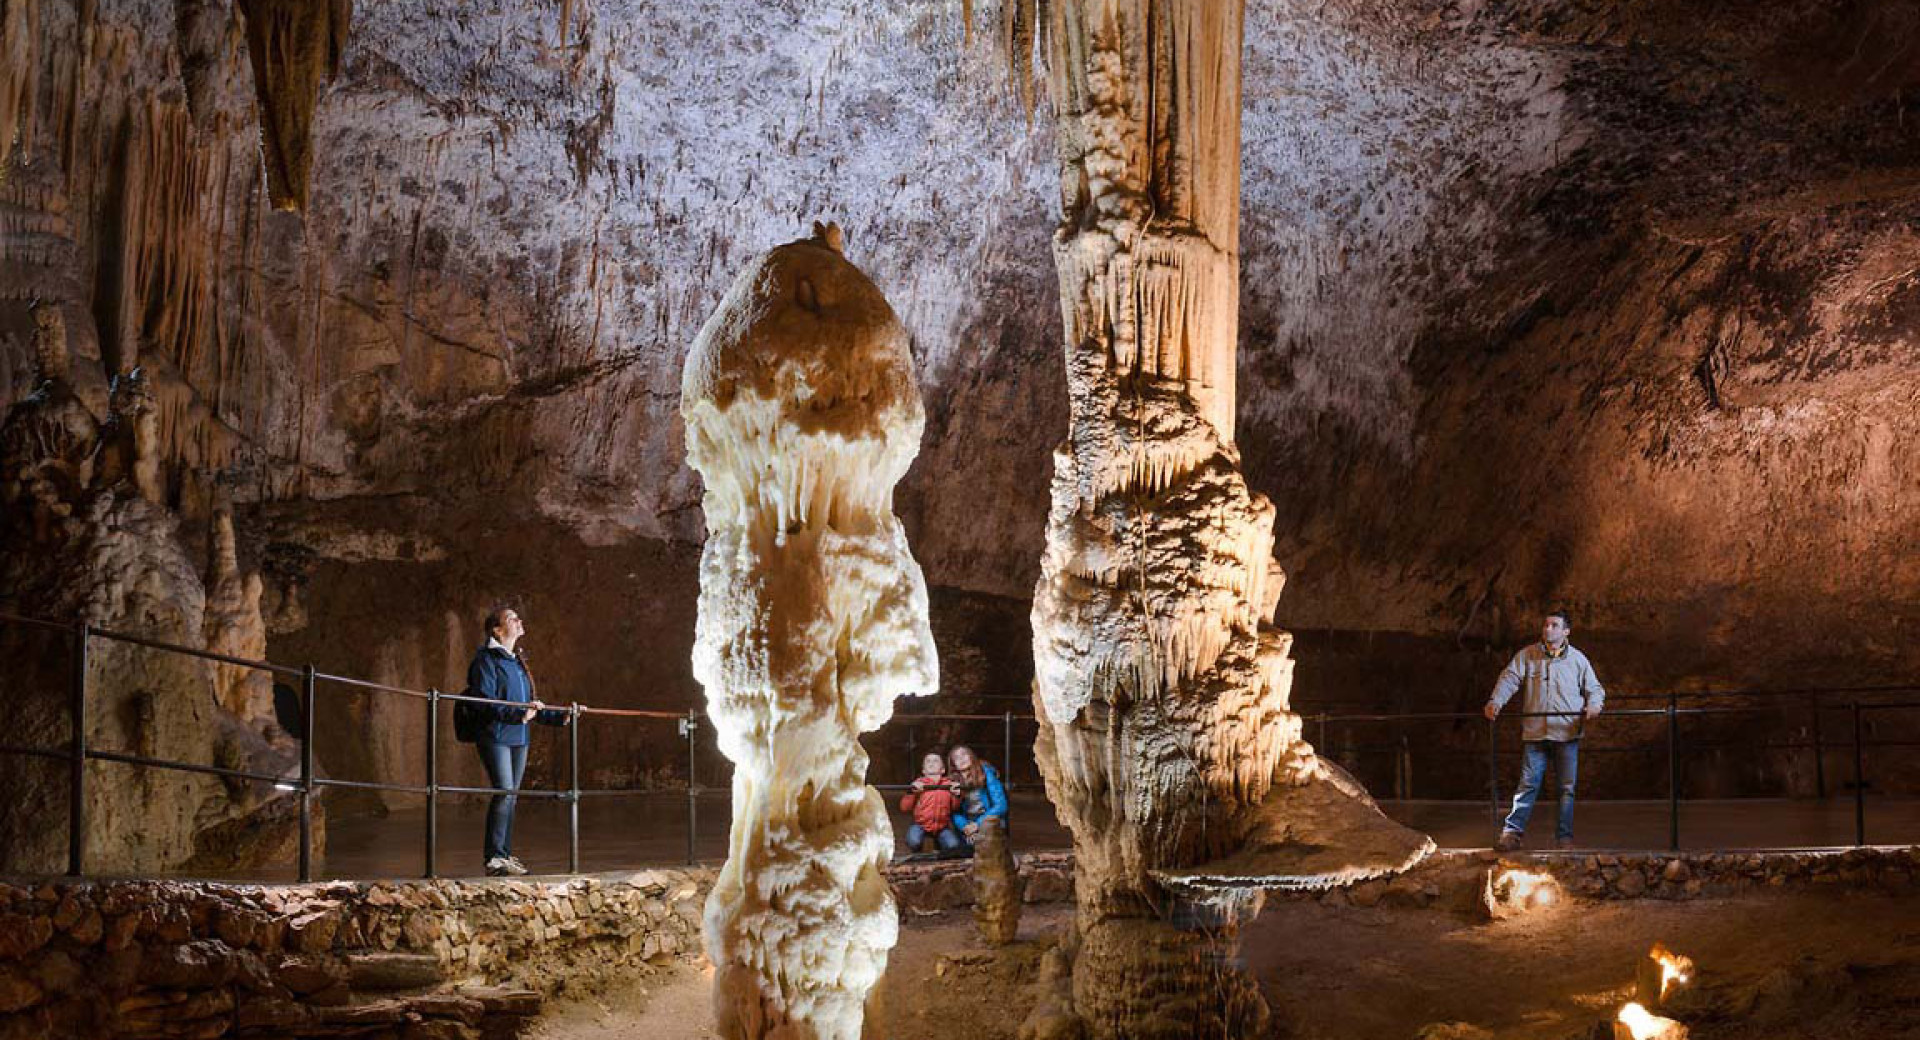 Notranjost Postojnske jame z obiskovalci na mostu. V ospredju osvetljena stalagmita.